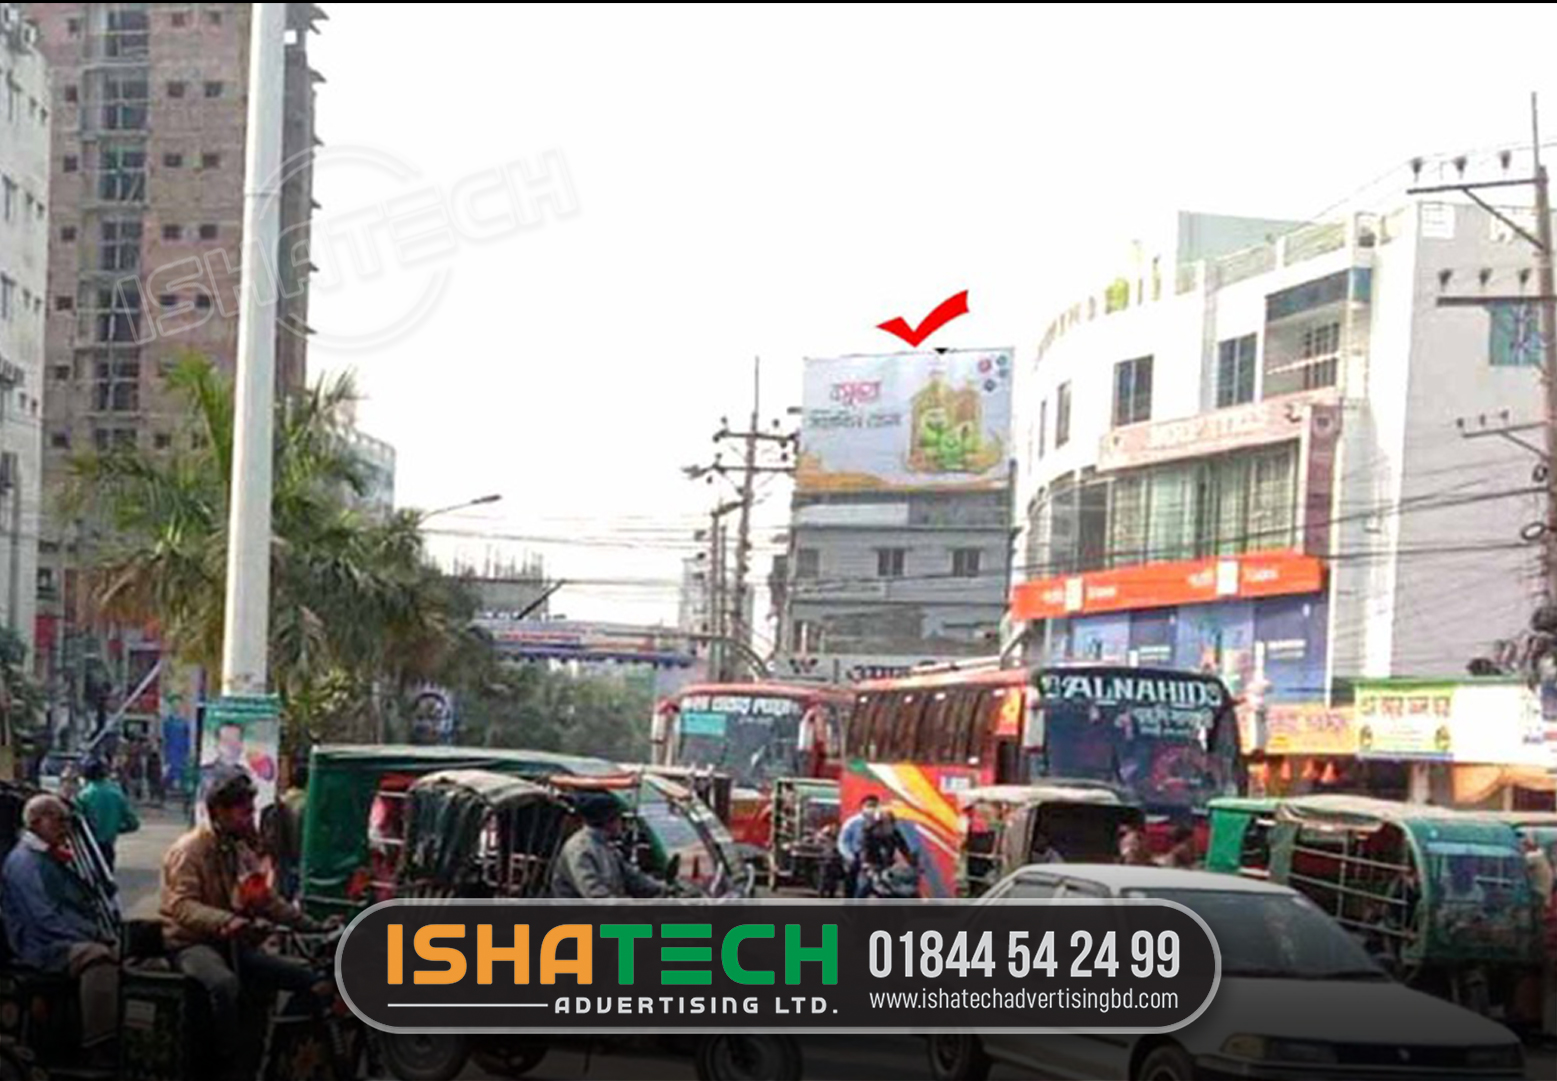 Led advertising screen price in Bangladesh. Led billboard advertising in Dhaka Bangladesh.